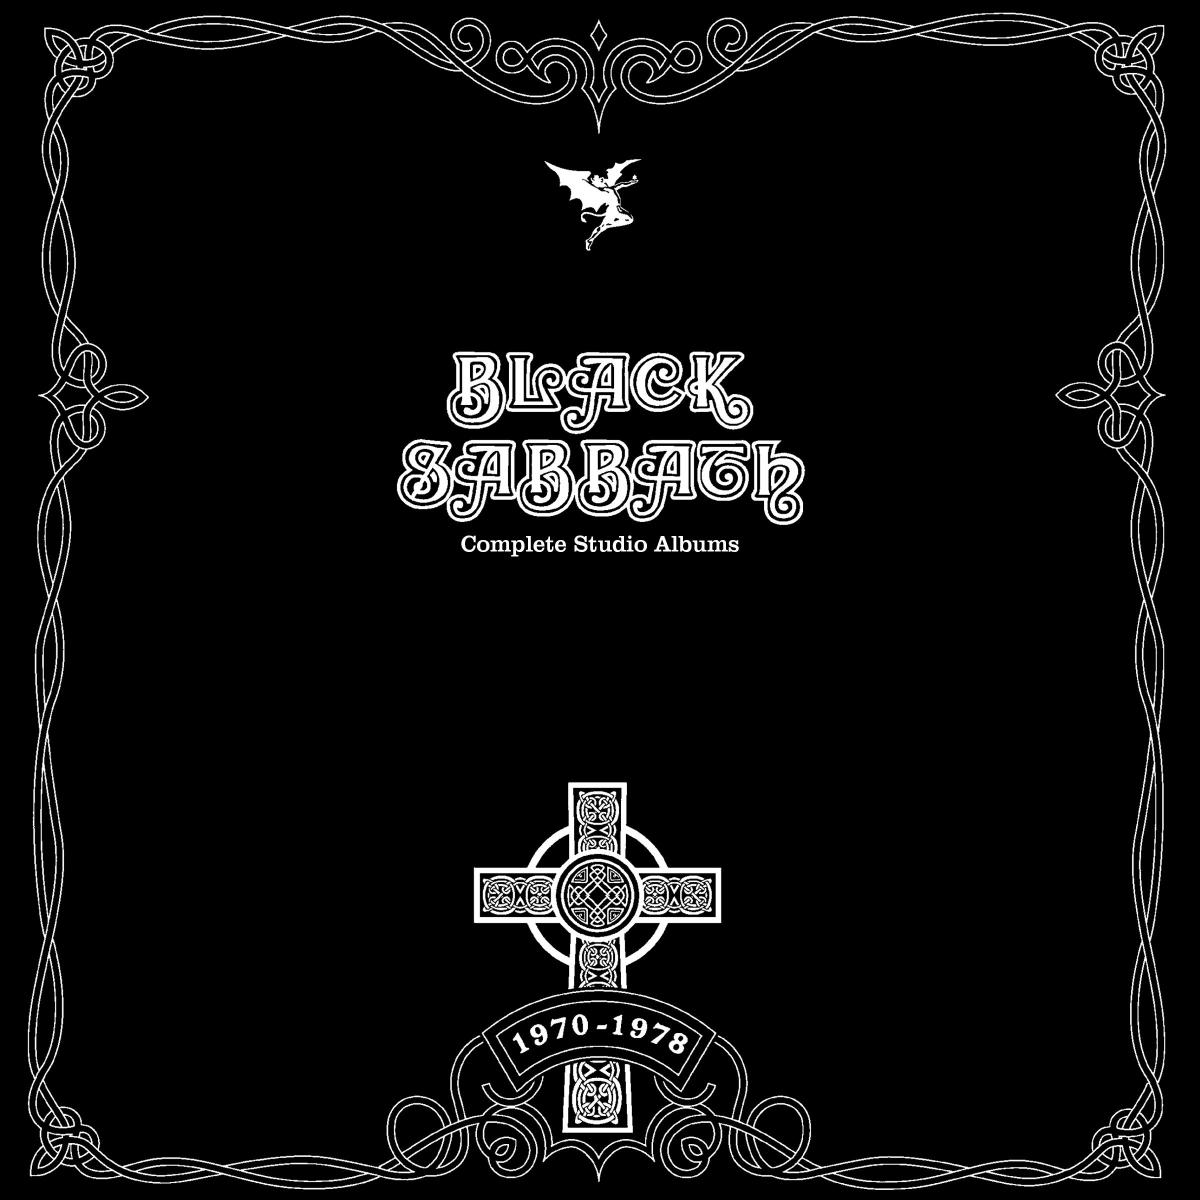 Black Sabbath Discography Rar - paymentdevelopers1200 x 1200